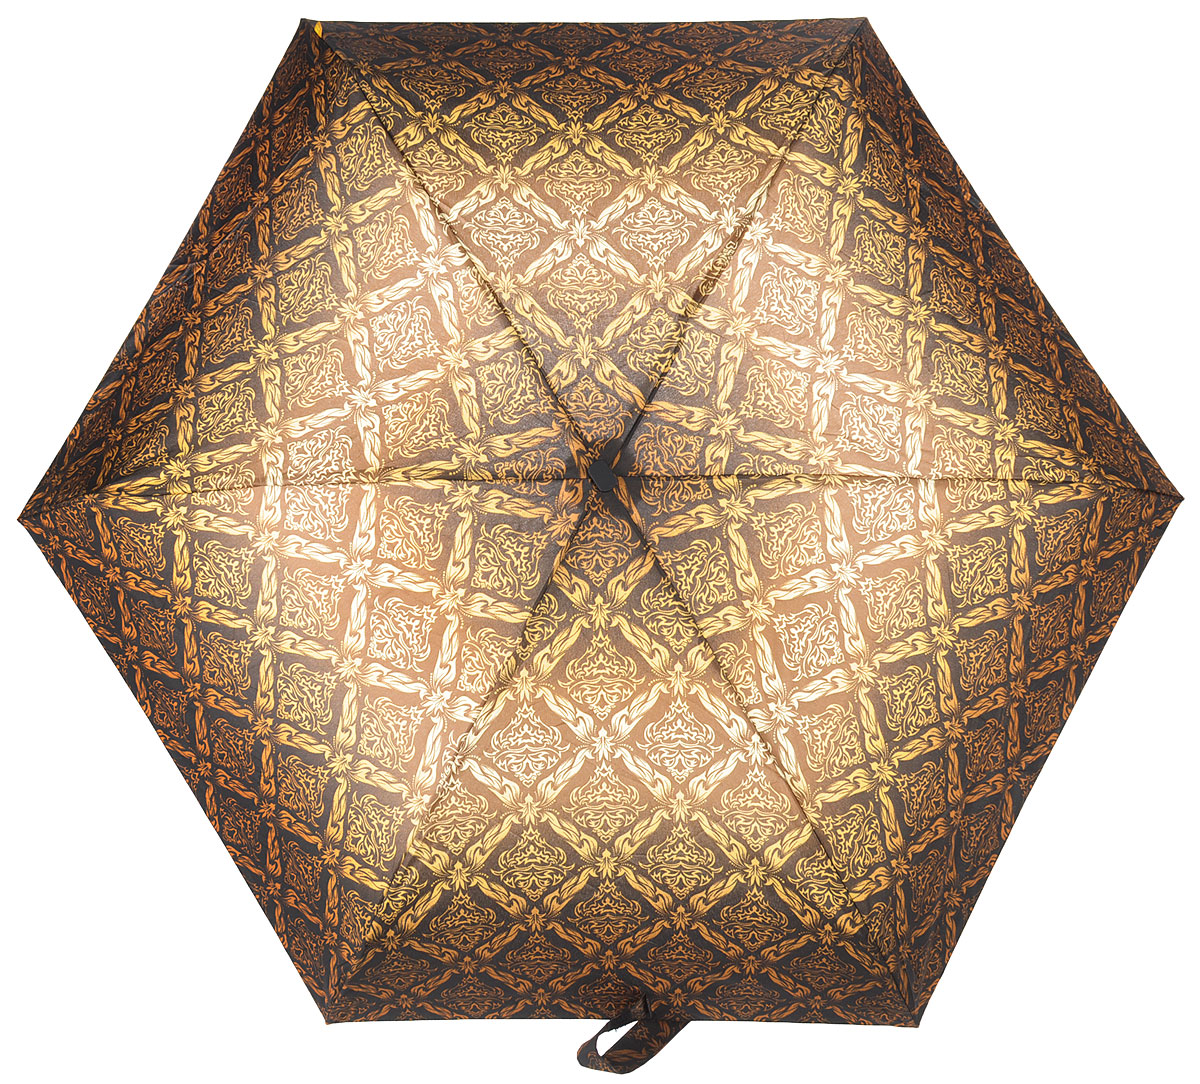 Зонт женский Zest, механический, 5 сложений, цвет: коричневый, желтый. 25518-2731